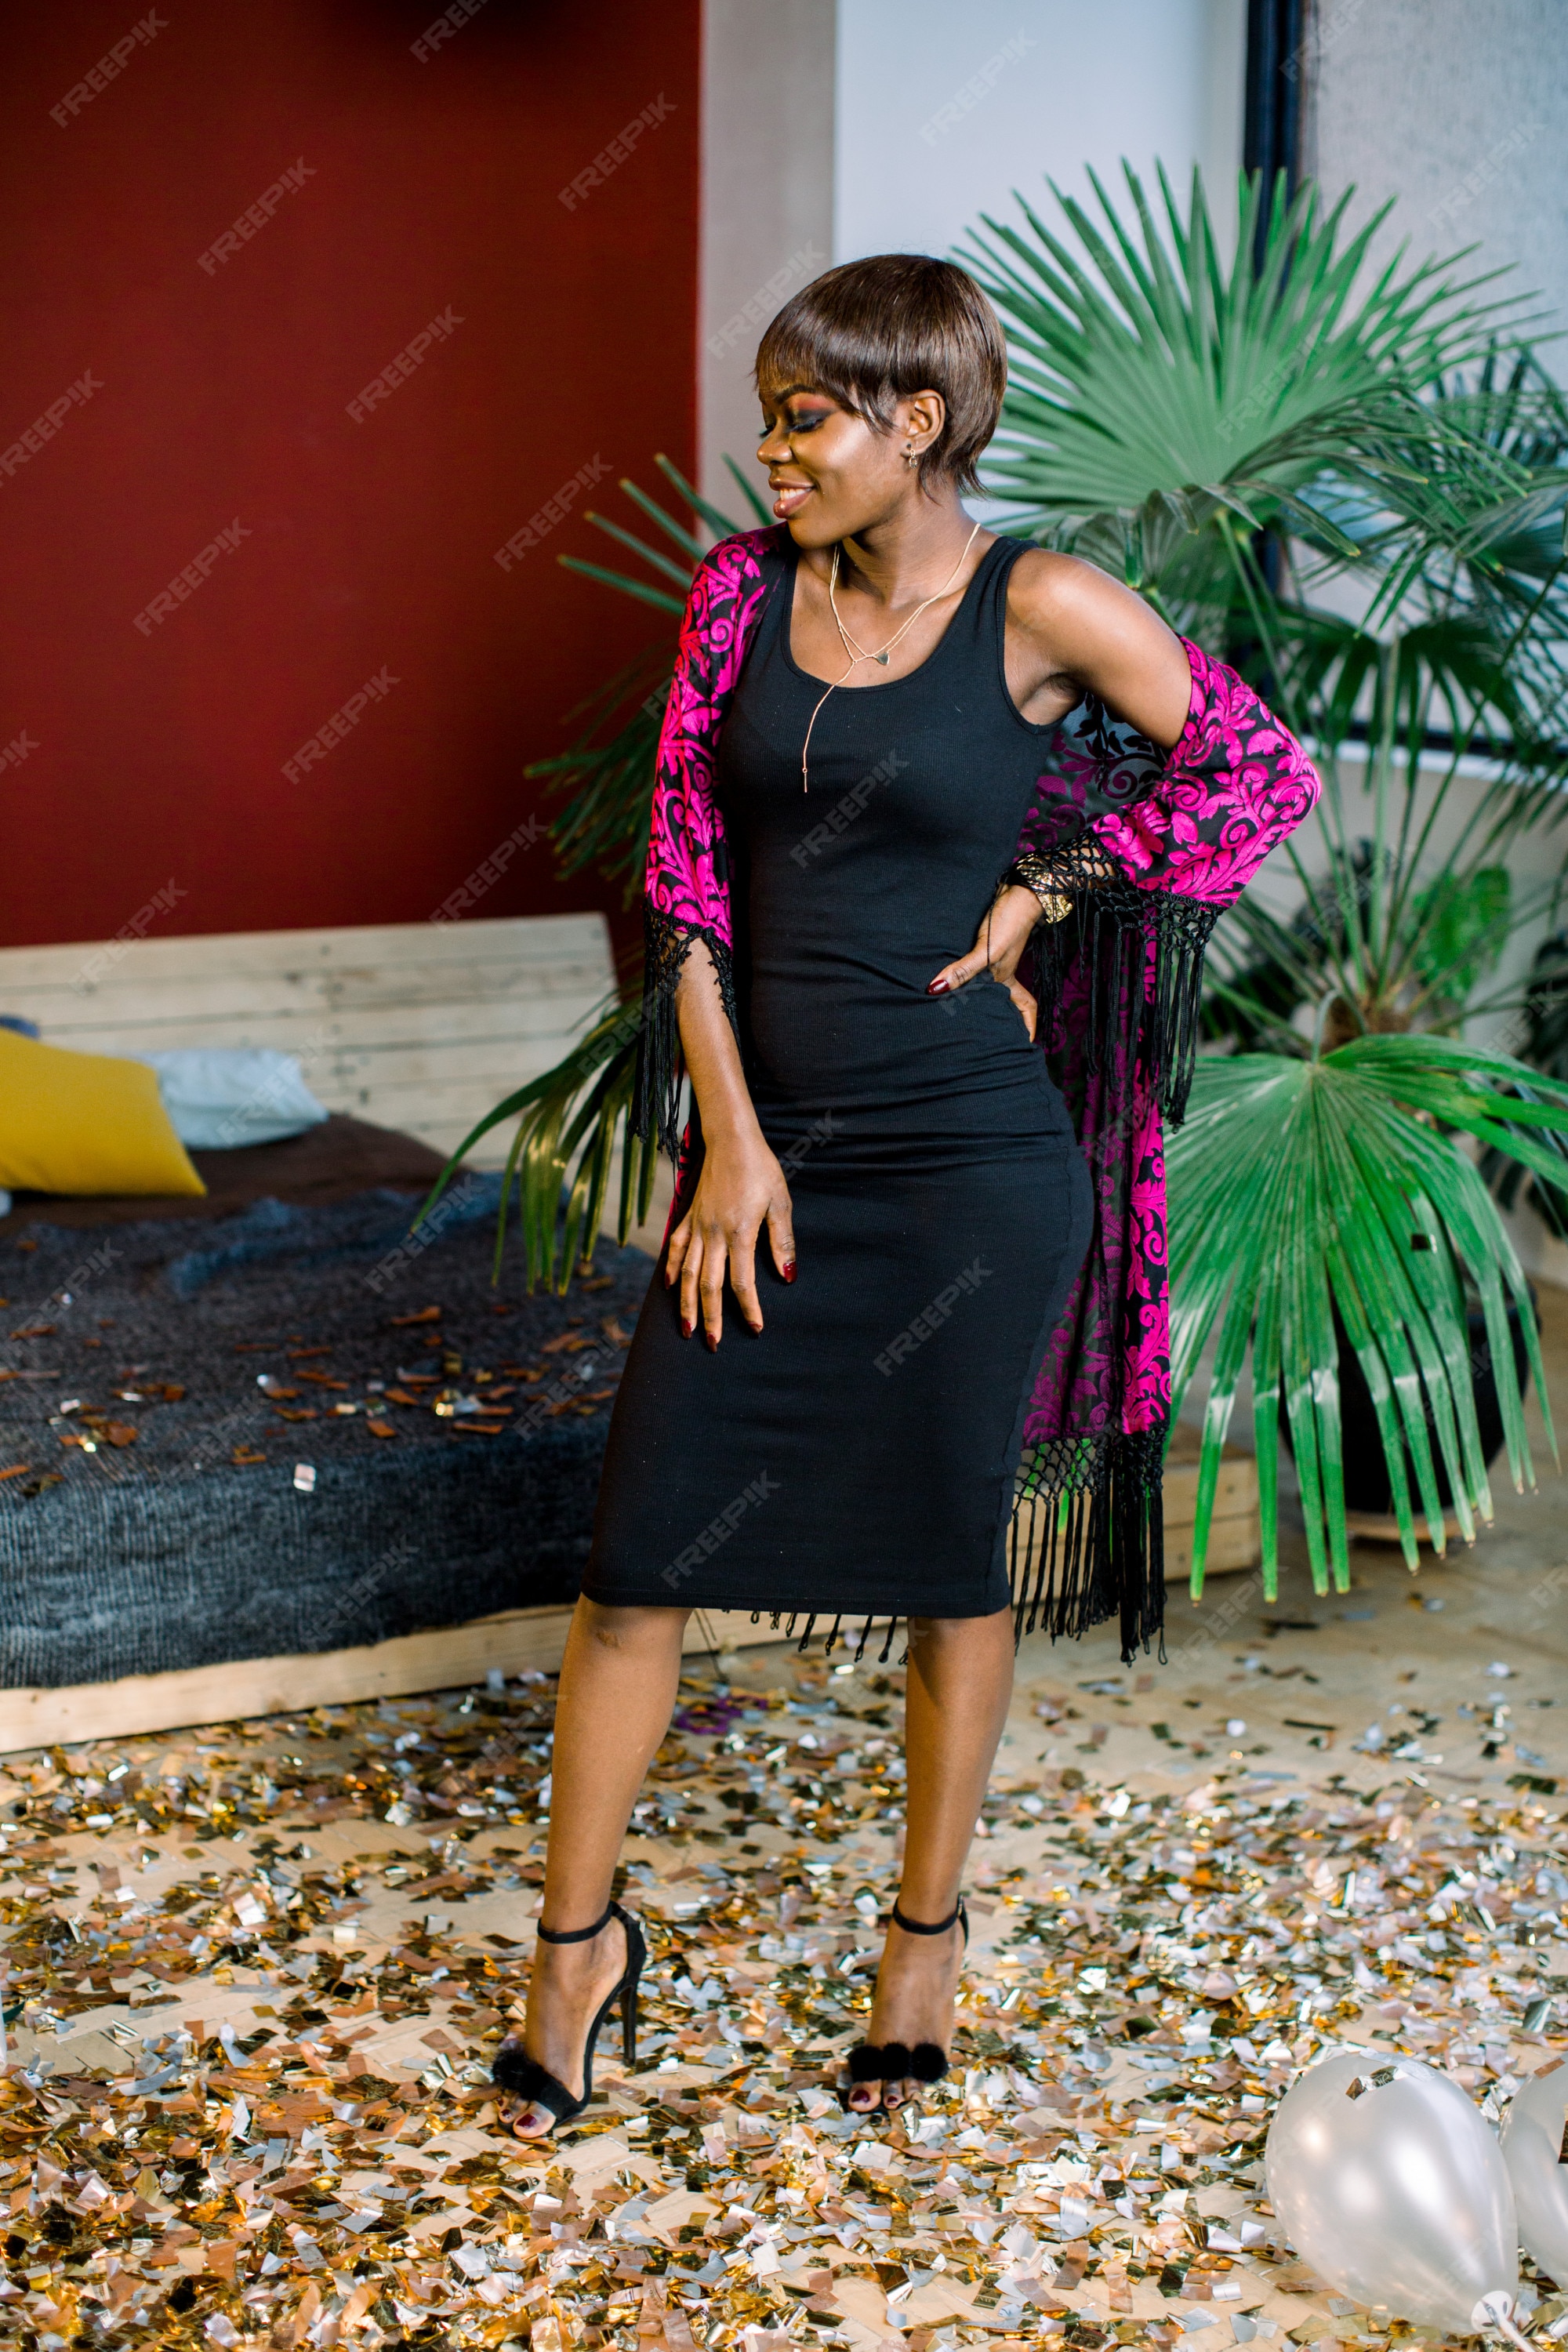 Chica africana soñadora vestido negro celebrando, deseo. día de la mujer, feliz año nuevo concepto de fiesta de de cumpleaños maqueta | Foto Premium